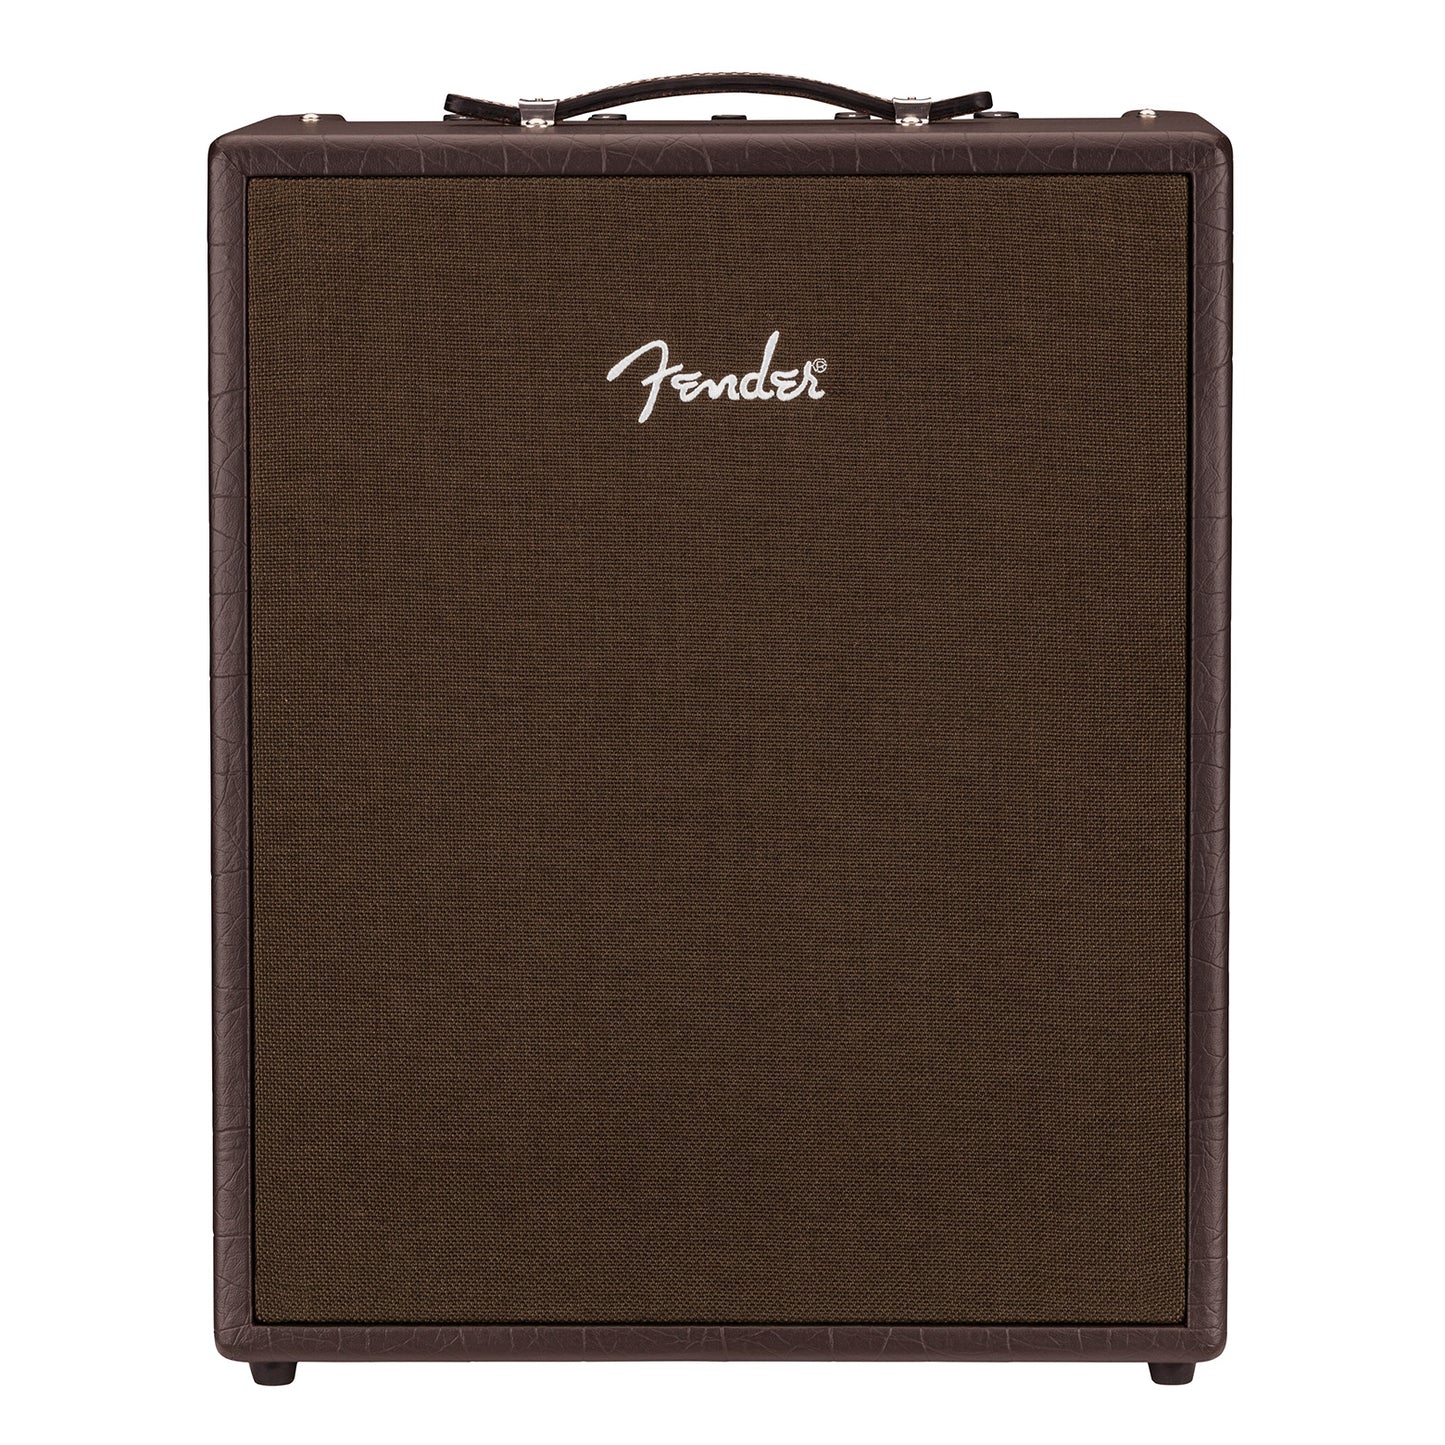 Fender Acoustic SFX II 200 Watt Guitar Combo Amplifier 230V EUR with Bluetooth, 8" Woofer, 6.5" Side Speaker, 90s Looper, Digital Effects, 2 Channels